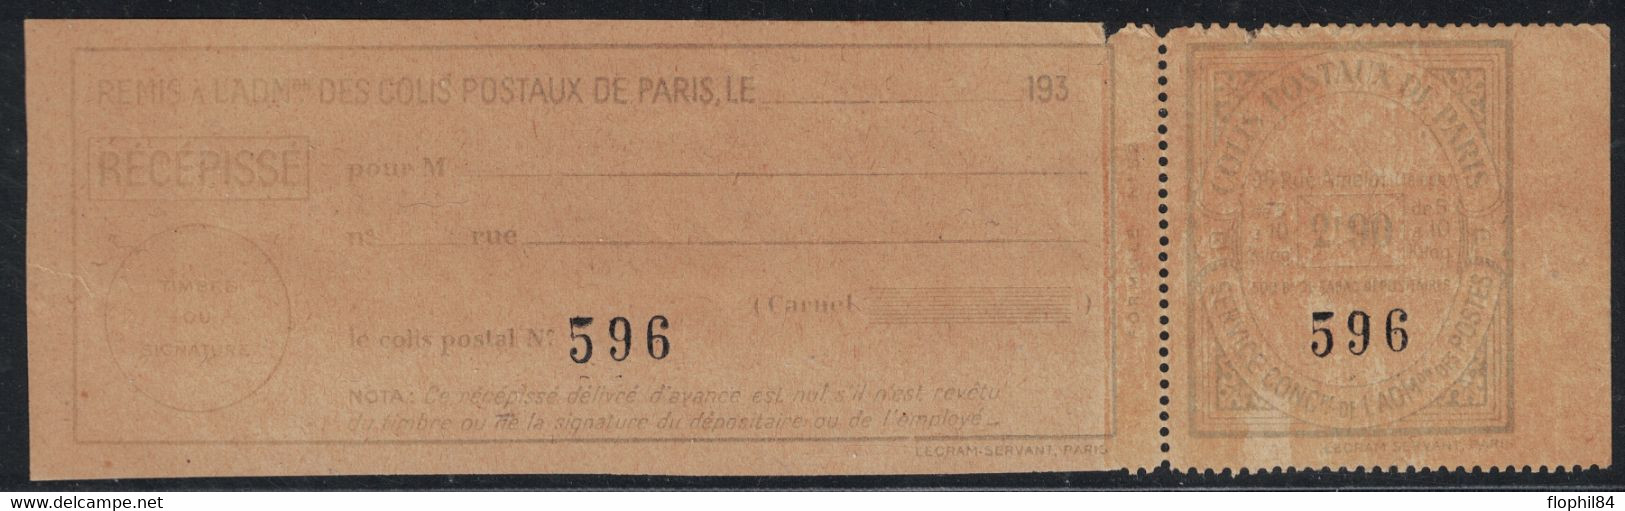 COLIS POSTAUX DE PARIS POUR PARIS - N°153 - 2F90 BLEU CLAIR SUR PAPIER JAUNE (NON SIGNALE ) - COTE DU NORMAL 22€. - Ungebraucht